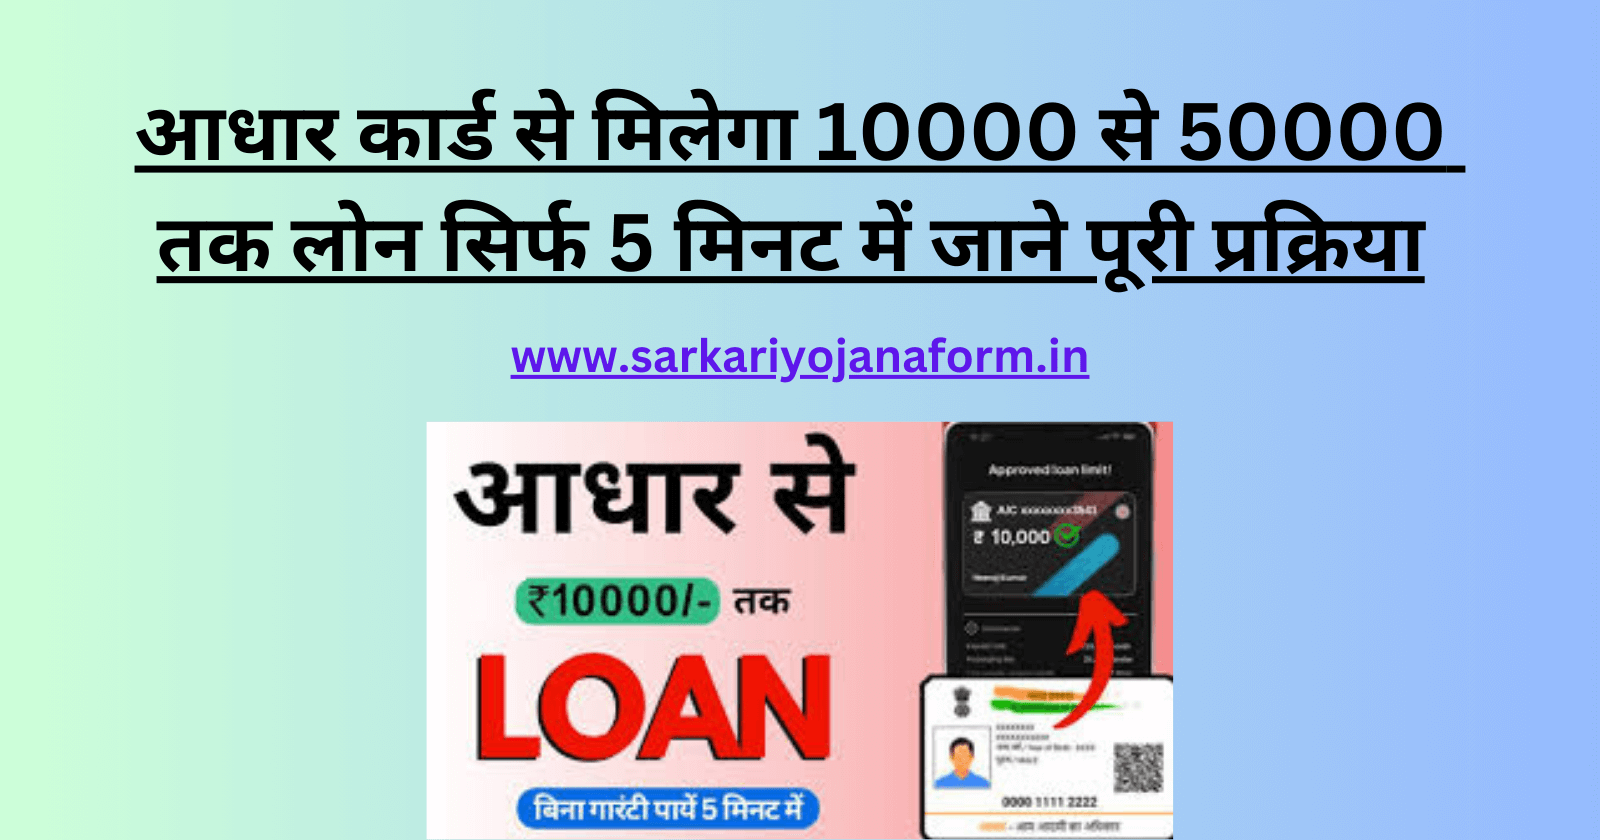 aadhar-card-per-10000-ka-loan-kaise-milta-hai